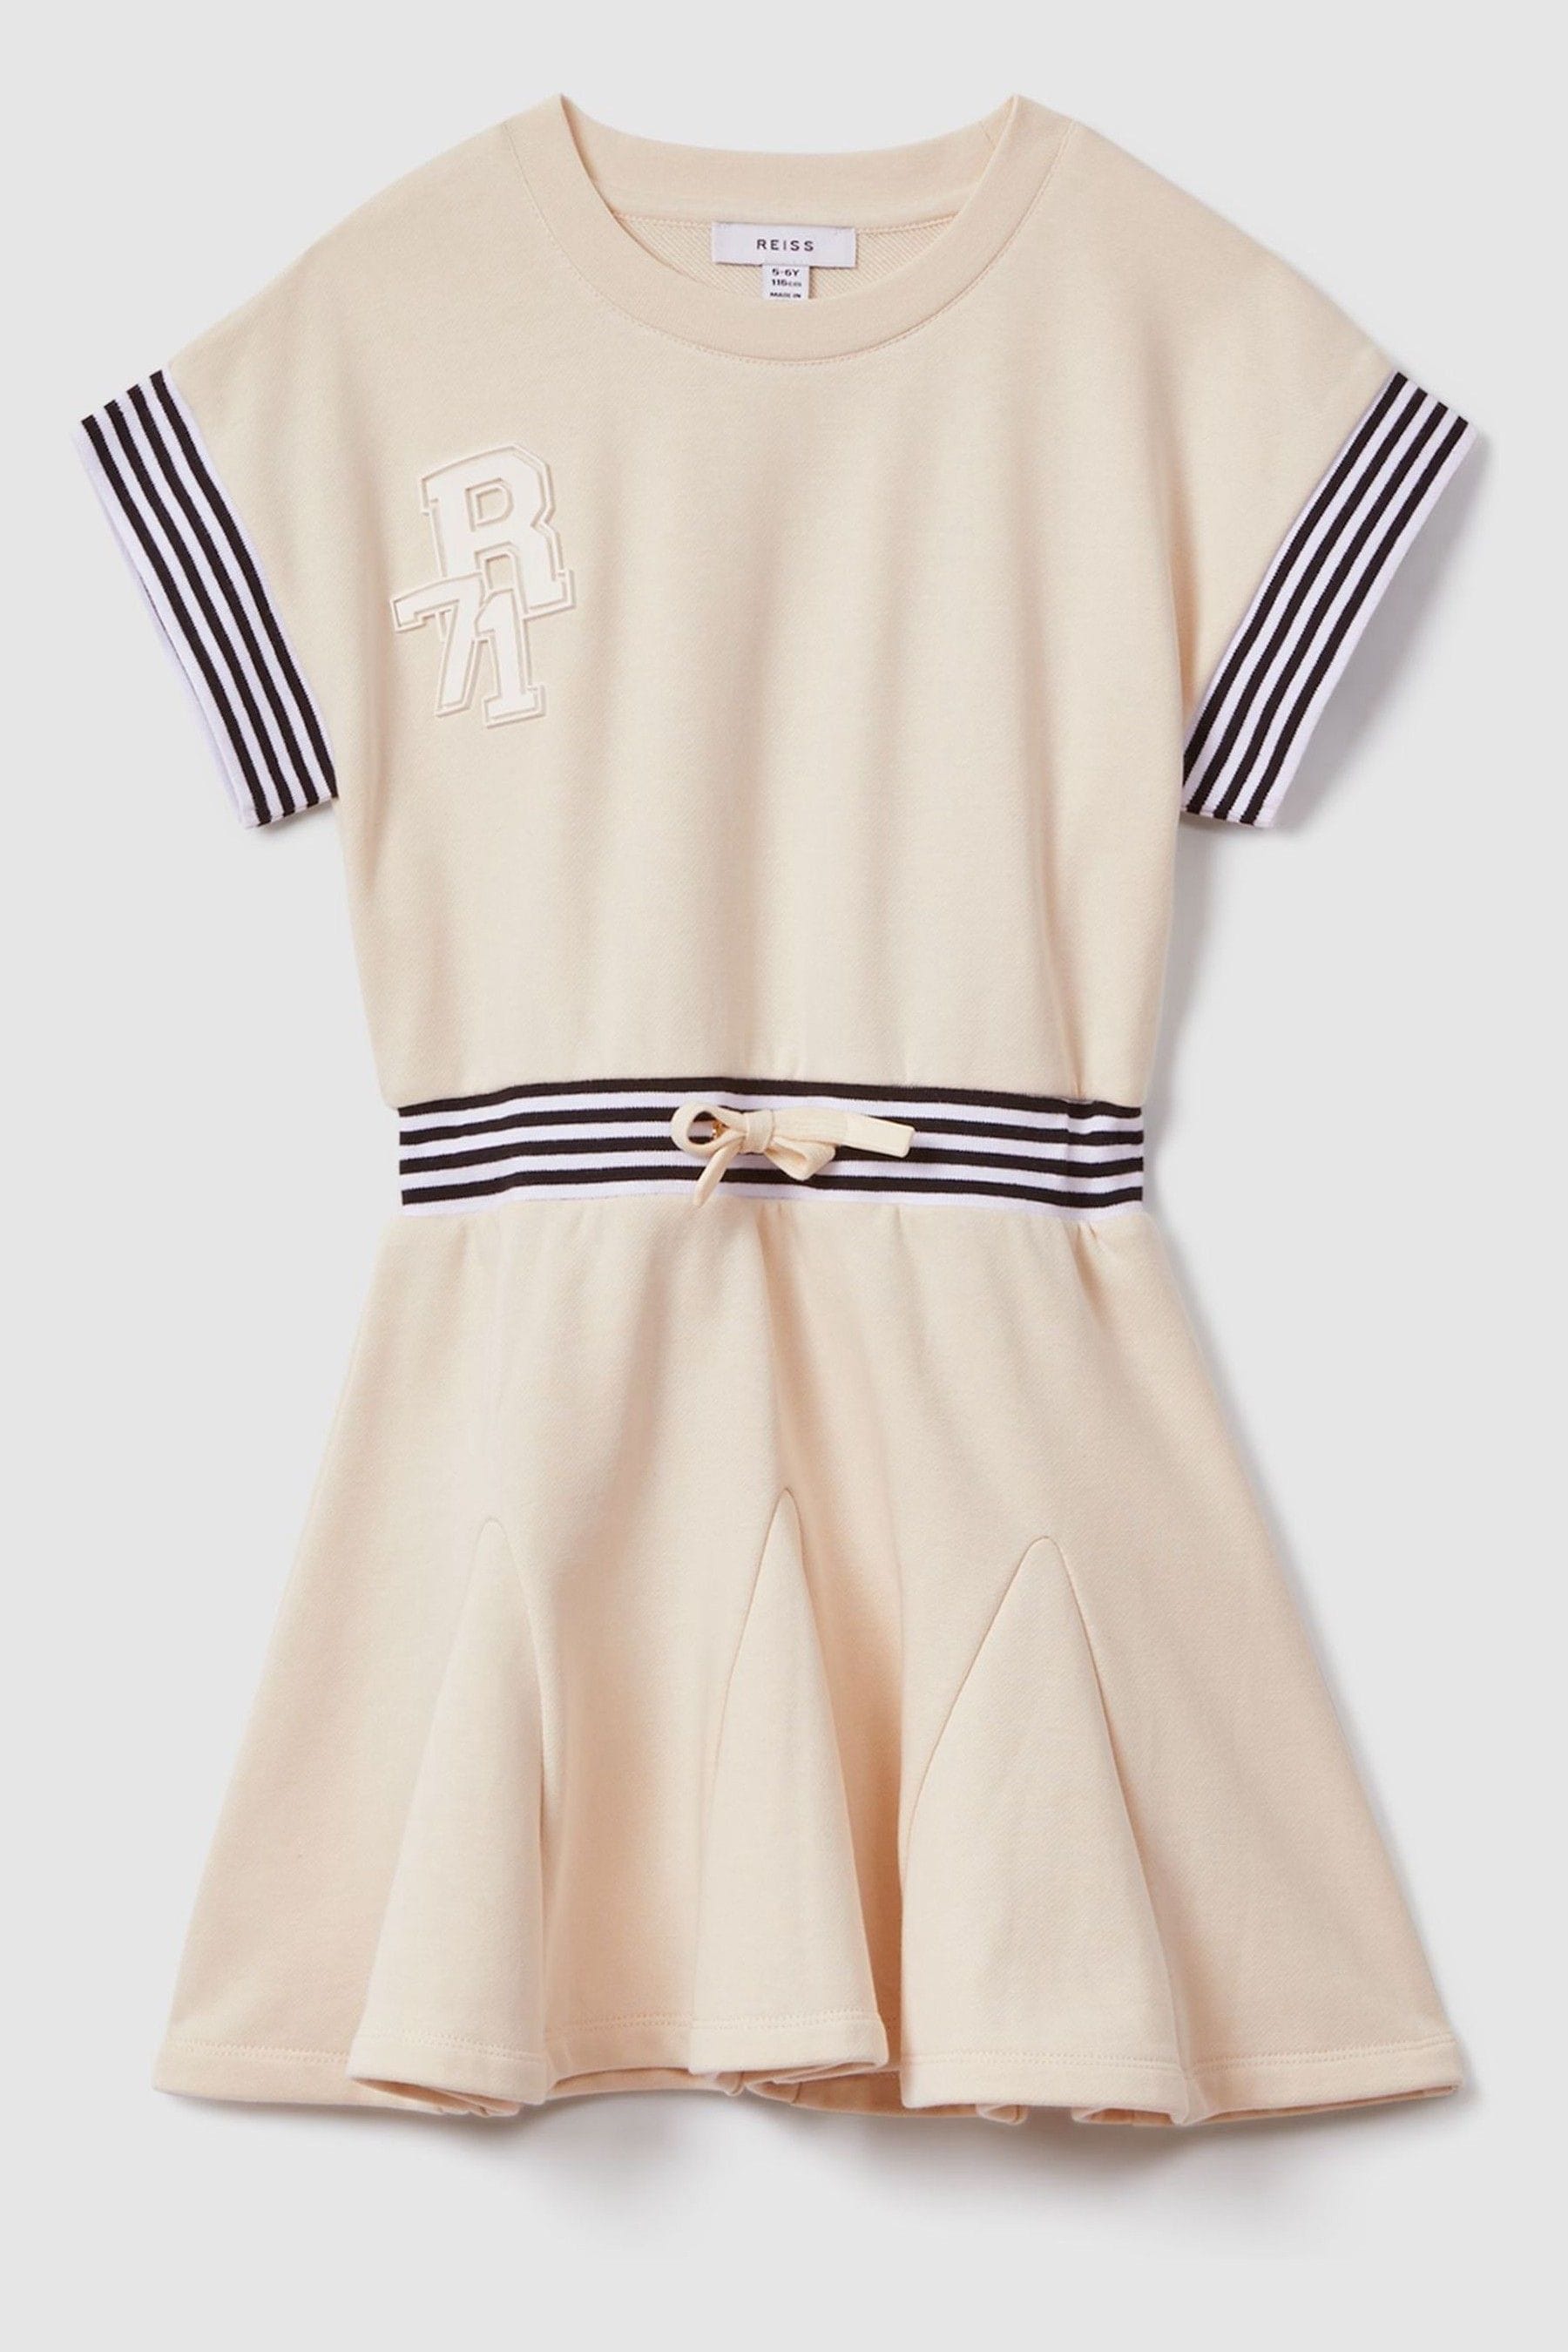 Shop Reiss Milo - Ivory Teen Cotton Blend Logo Dress, Uk 13-14 Yrs